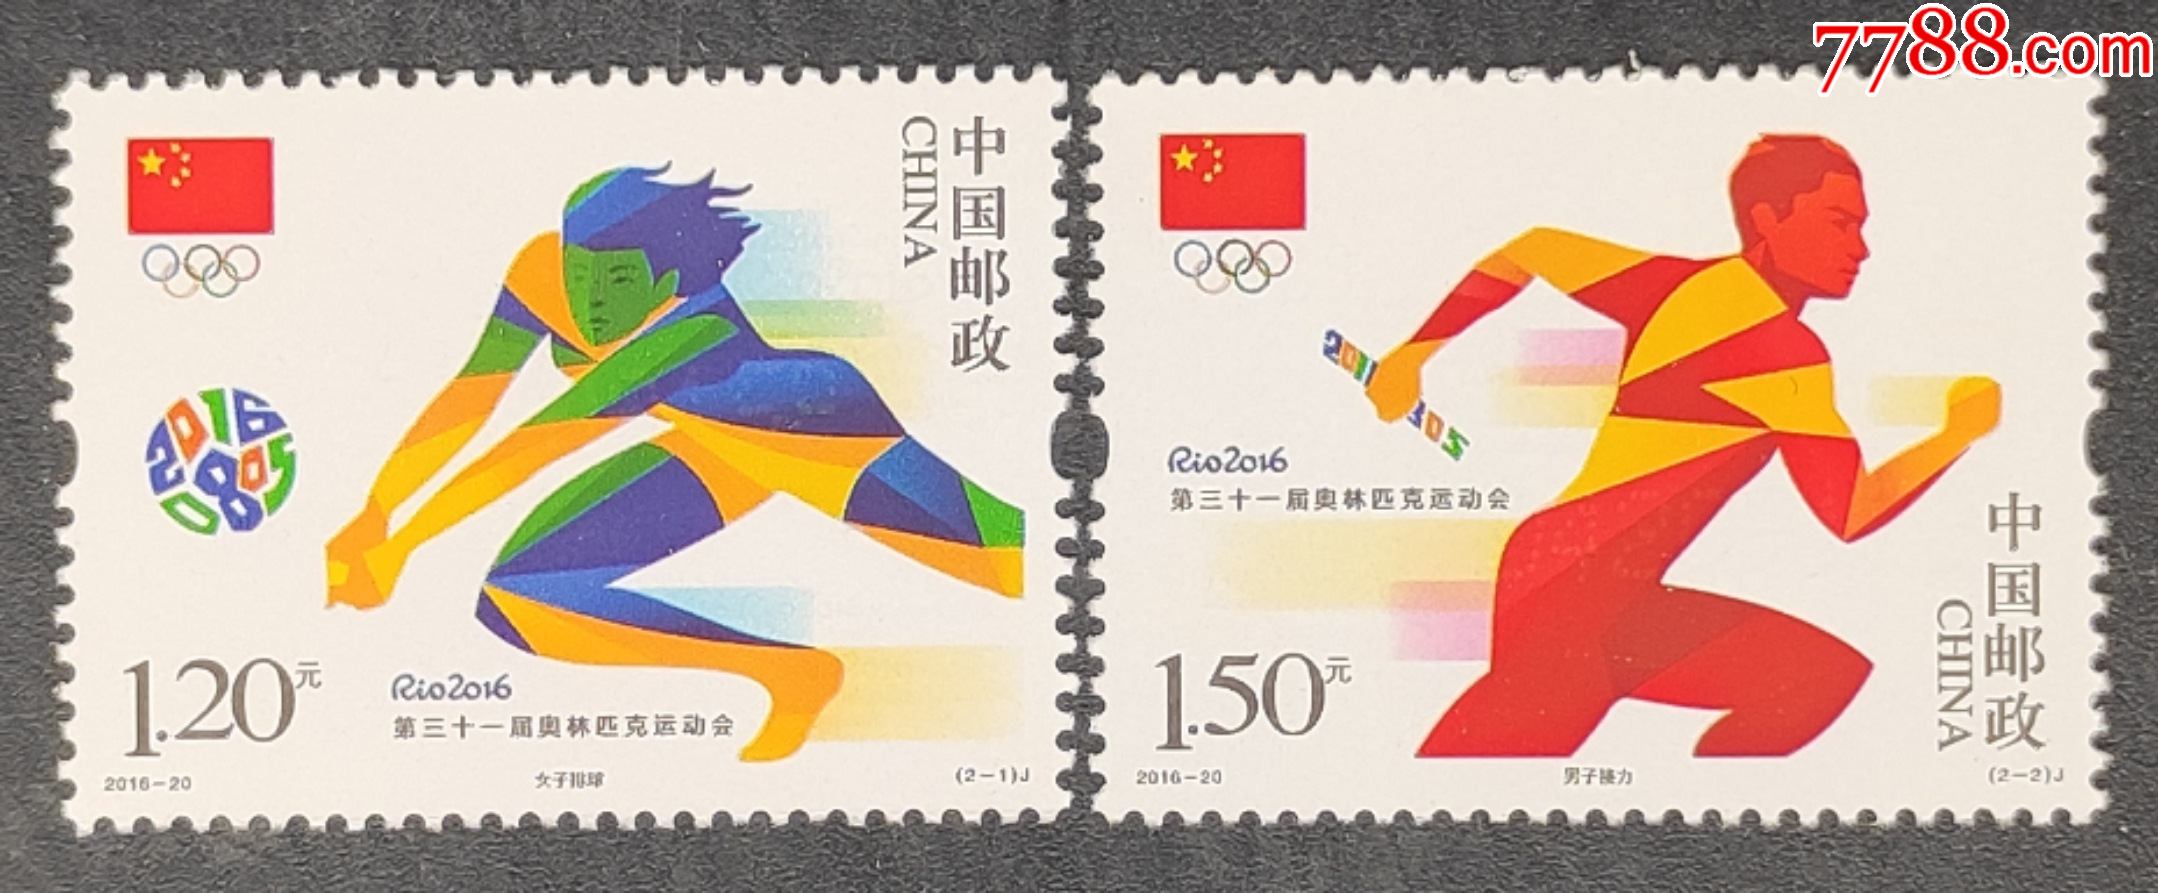 201620第三十一届奥运会邮票一套2枚